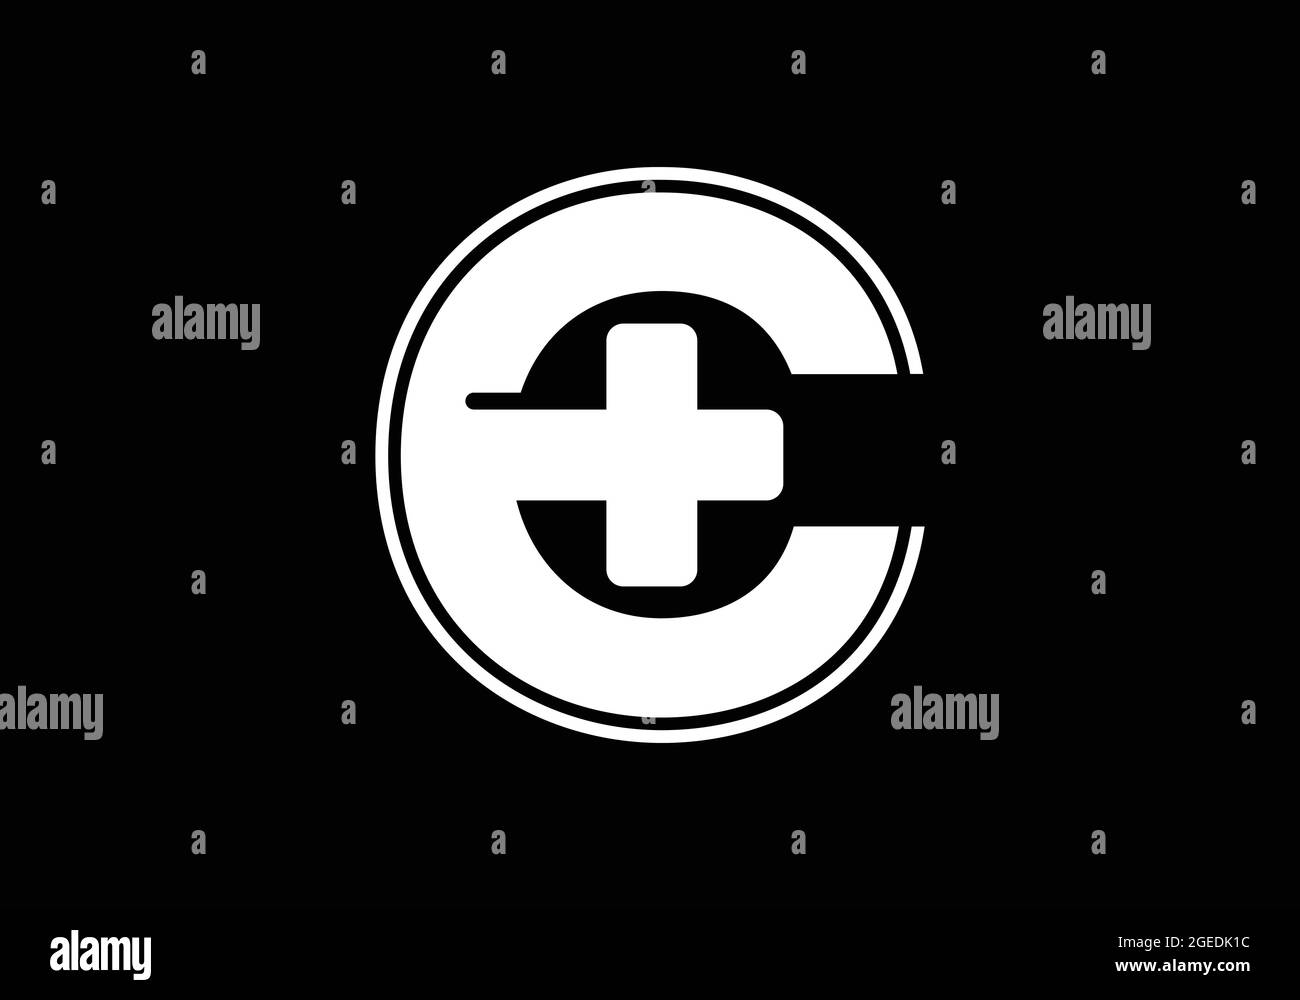 Anfängliches C-Monogramm-Alphabet mit einem Plus-Logo-Zeichen weiß auf schwarzem Hintergrund. Schrift-Emblem. Modernes Vektorlogo für Medizin- oder Gesundheitsbranche Stock Vektor